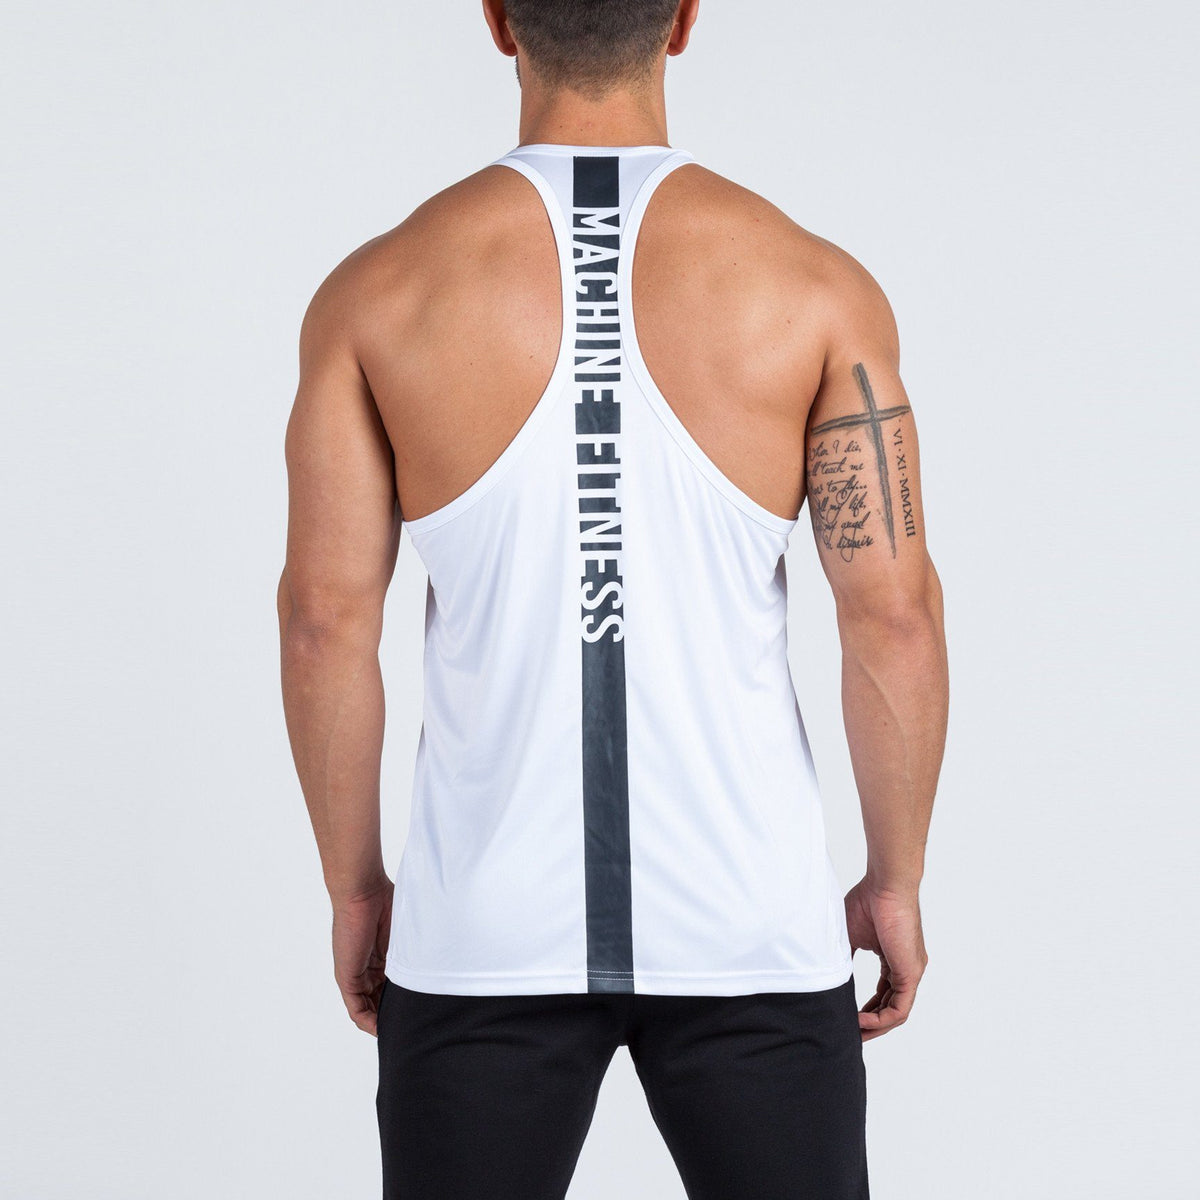 Mens Stringer Vests & Gym Tanks | Mens Gym Wear | Machine Fitness